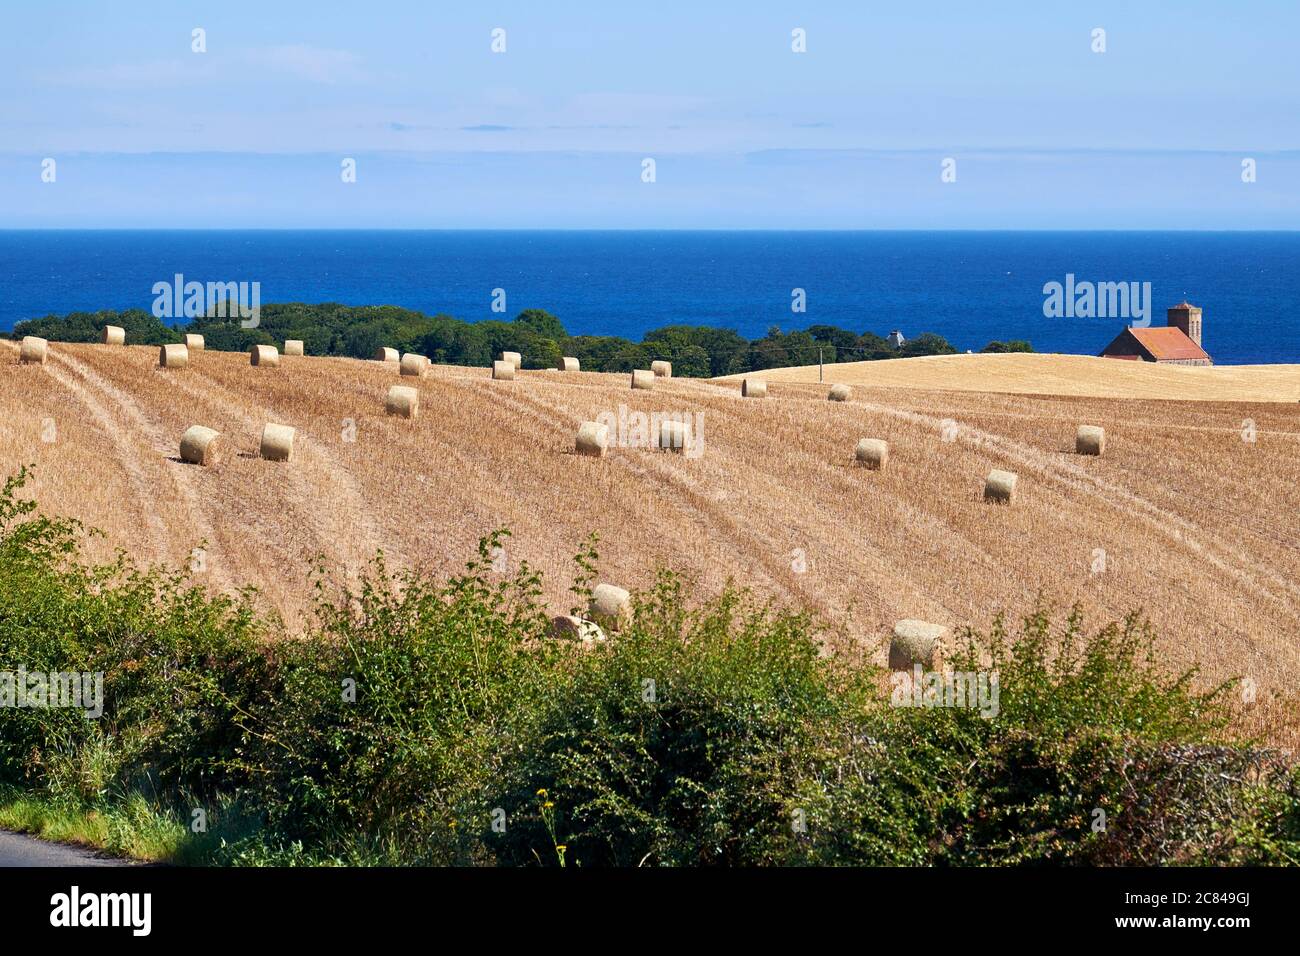 Paisaje agrícola en un entorno costero de fardos de heno tierras de cultivo con casa y el mar en el fondo Foto de stock